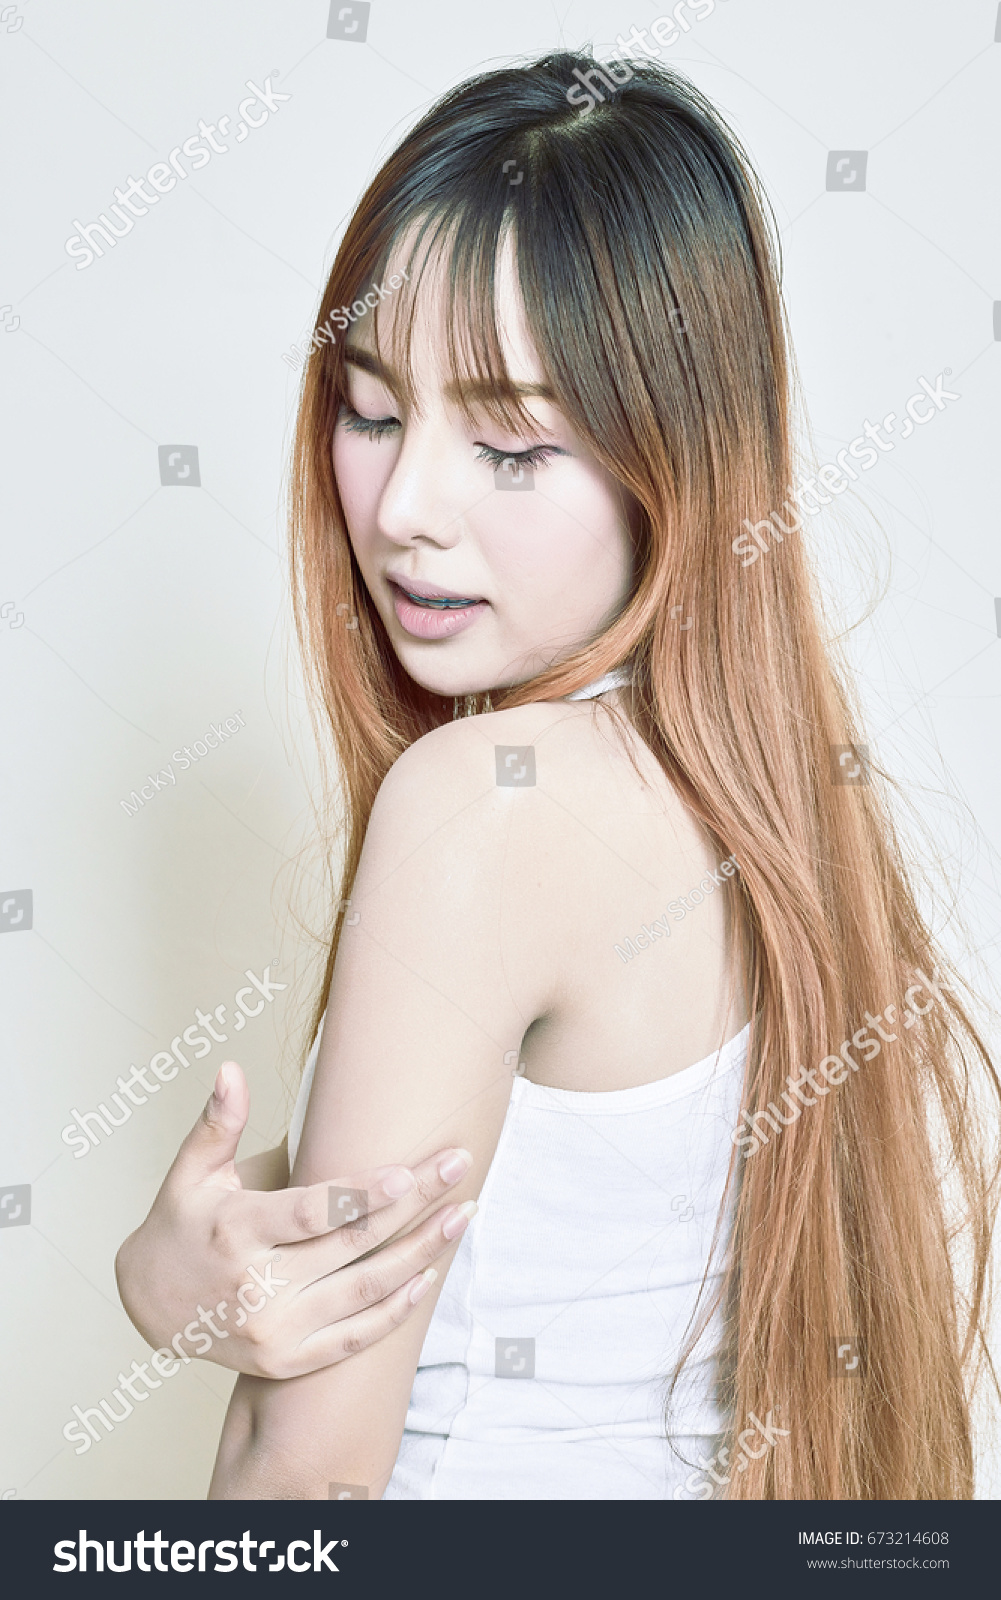 Asian Woman Apply Lotion On Her Foto De Stock 673214608 Shutterstock